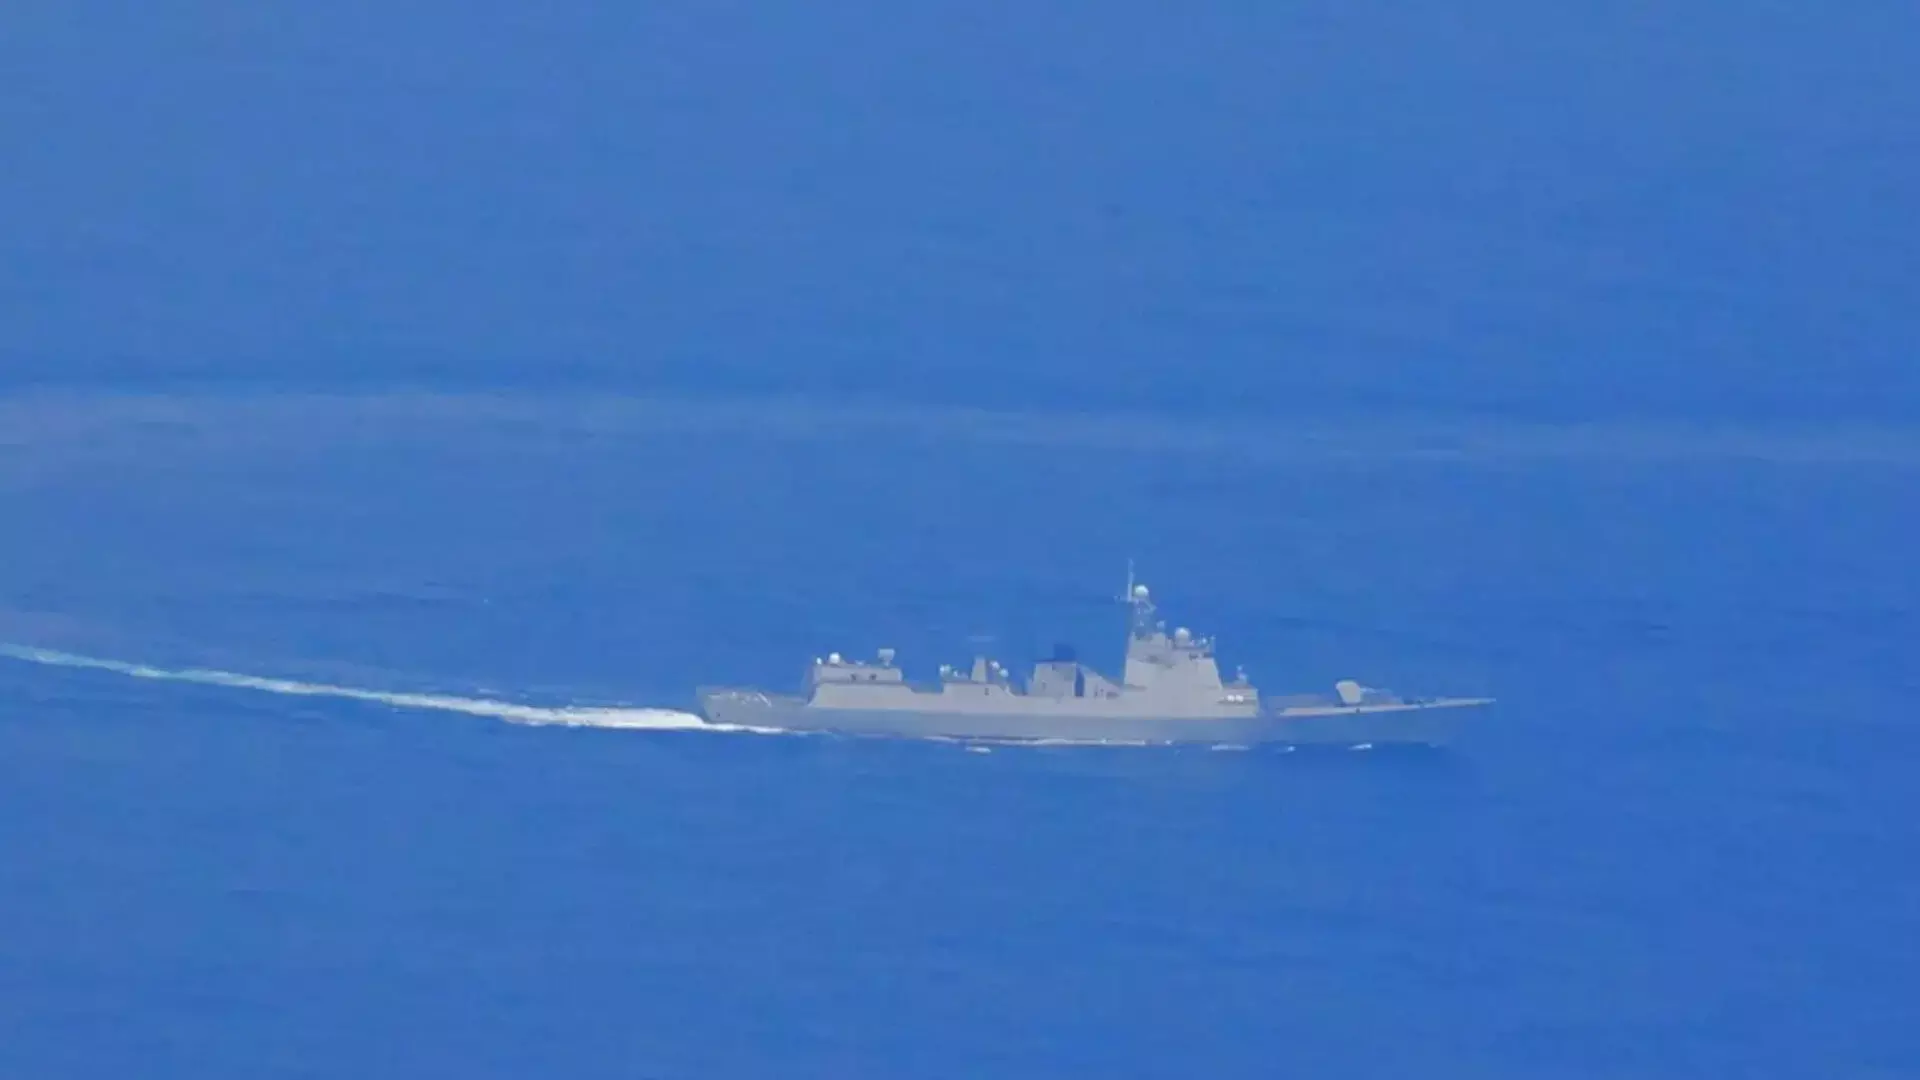 चीन ने ताइवान के नए नेतृत्व पर अपना गुस्सा दिखाने के लिए दर्जनों युद्धक विमान और जहाज भेजे